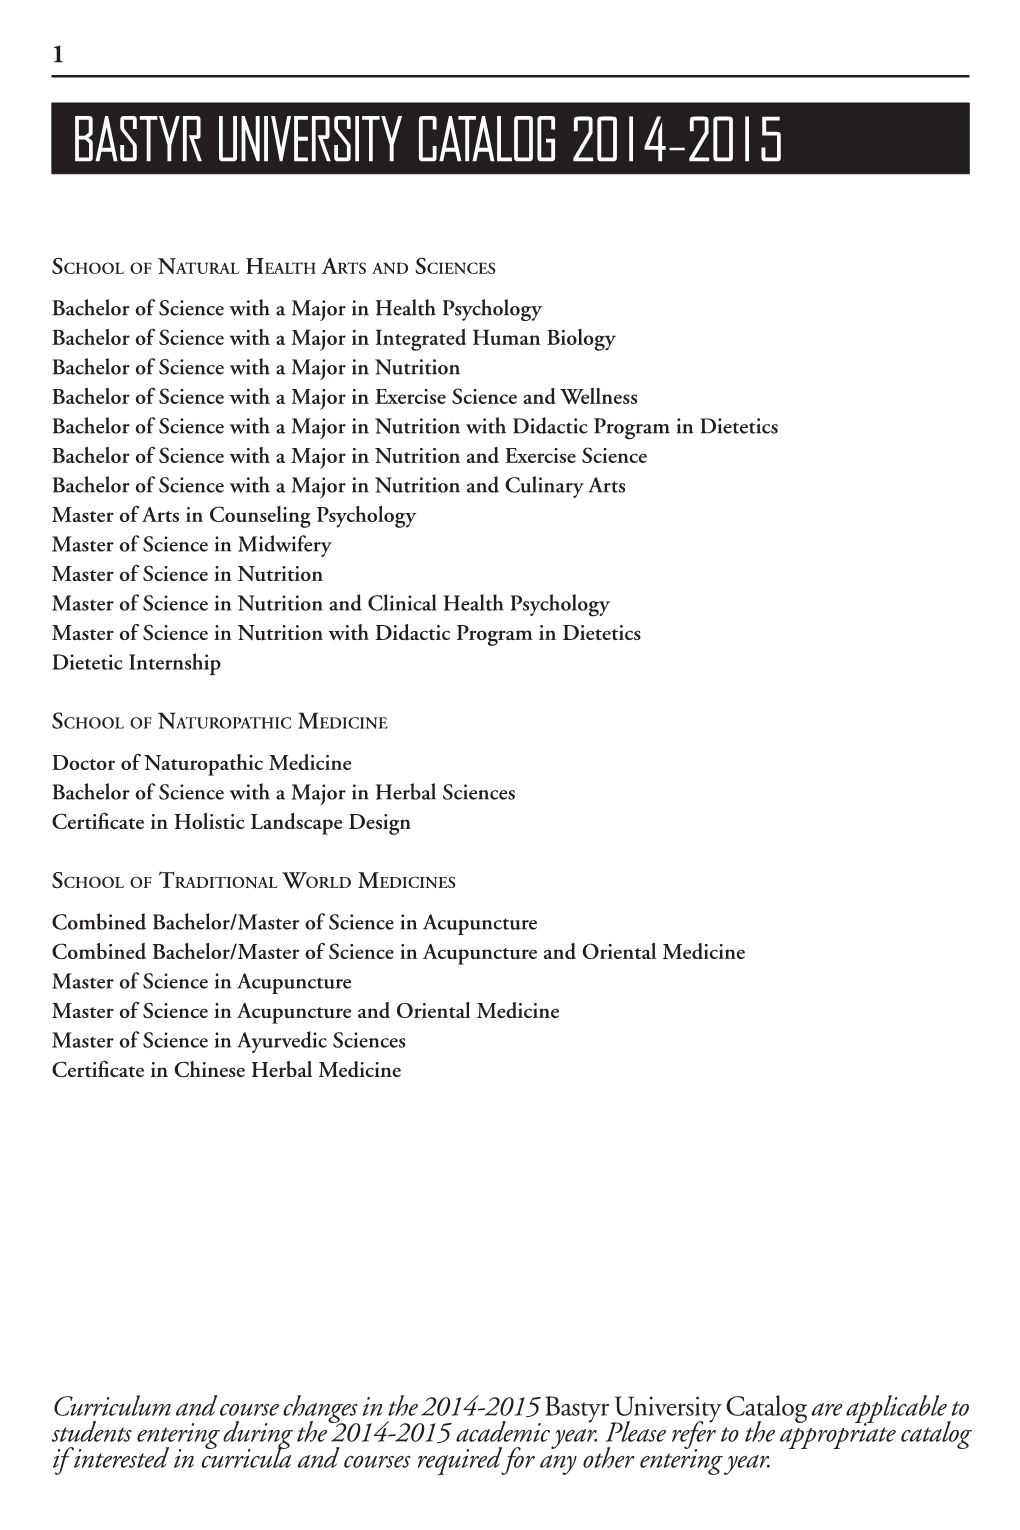 Bastyr University Catalog 2014-2015